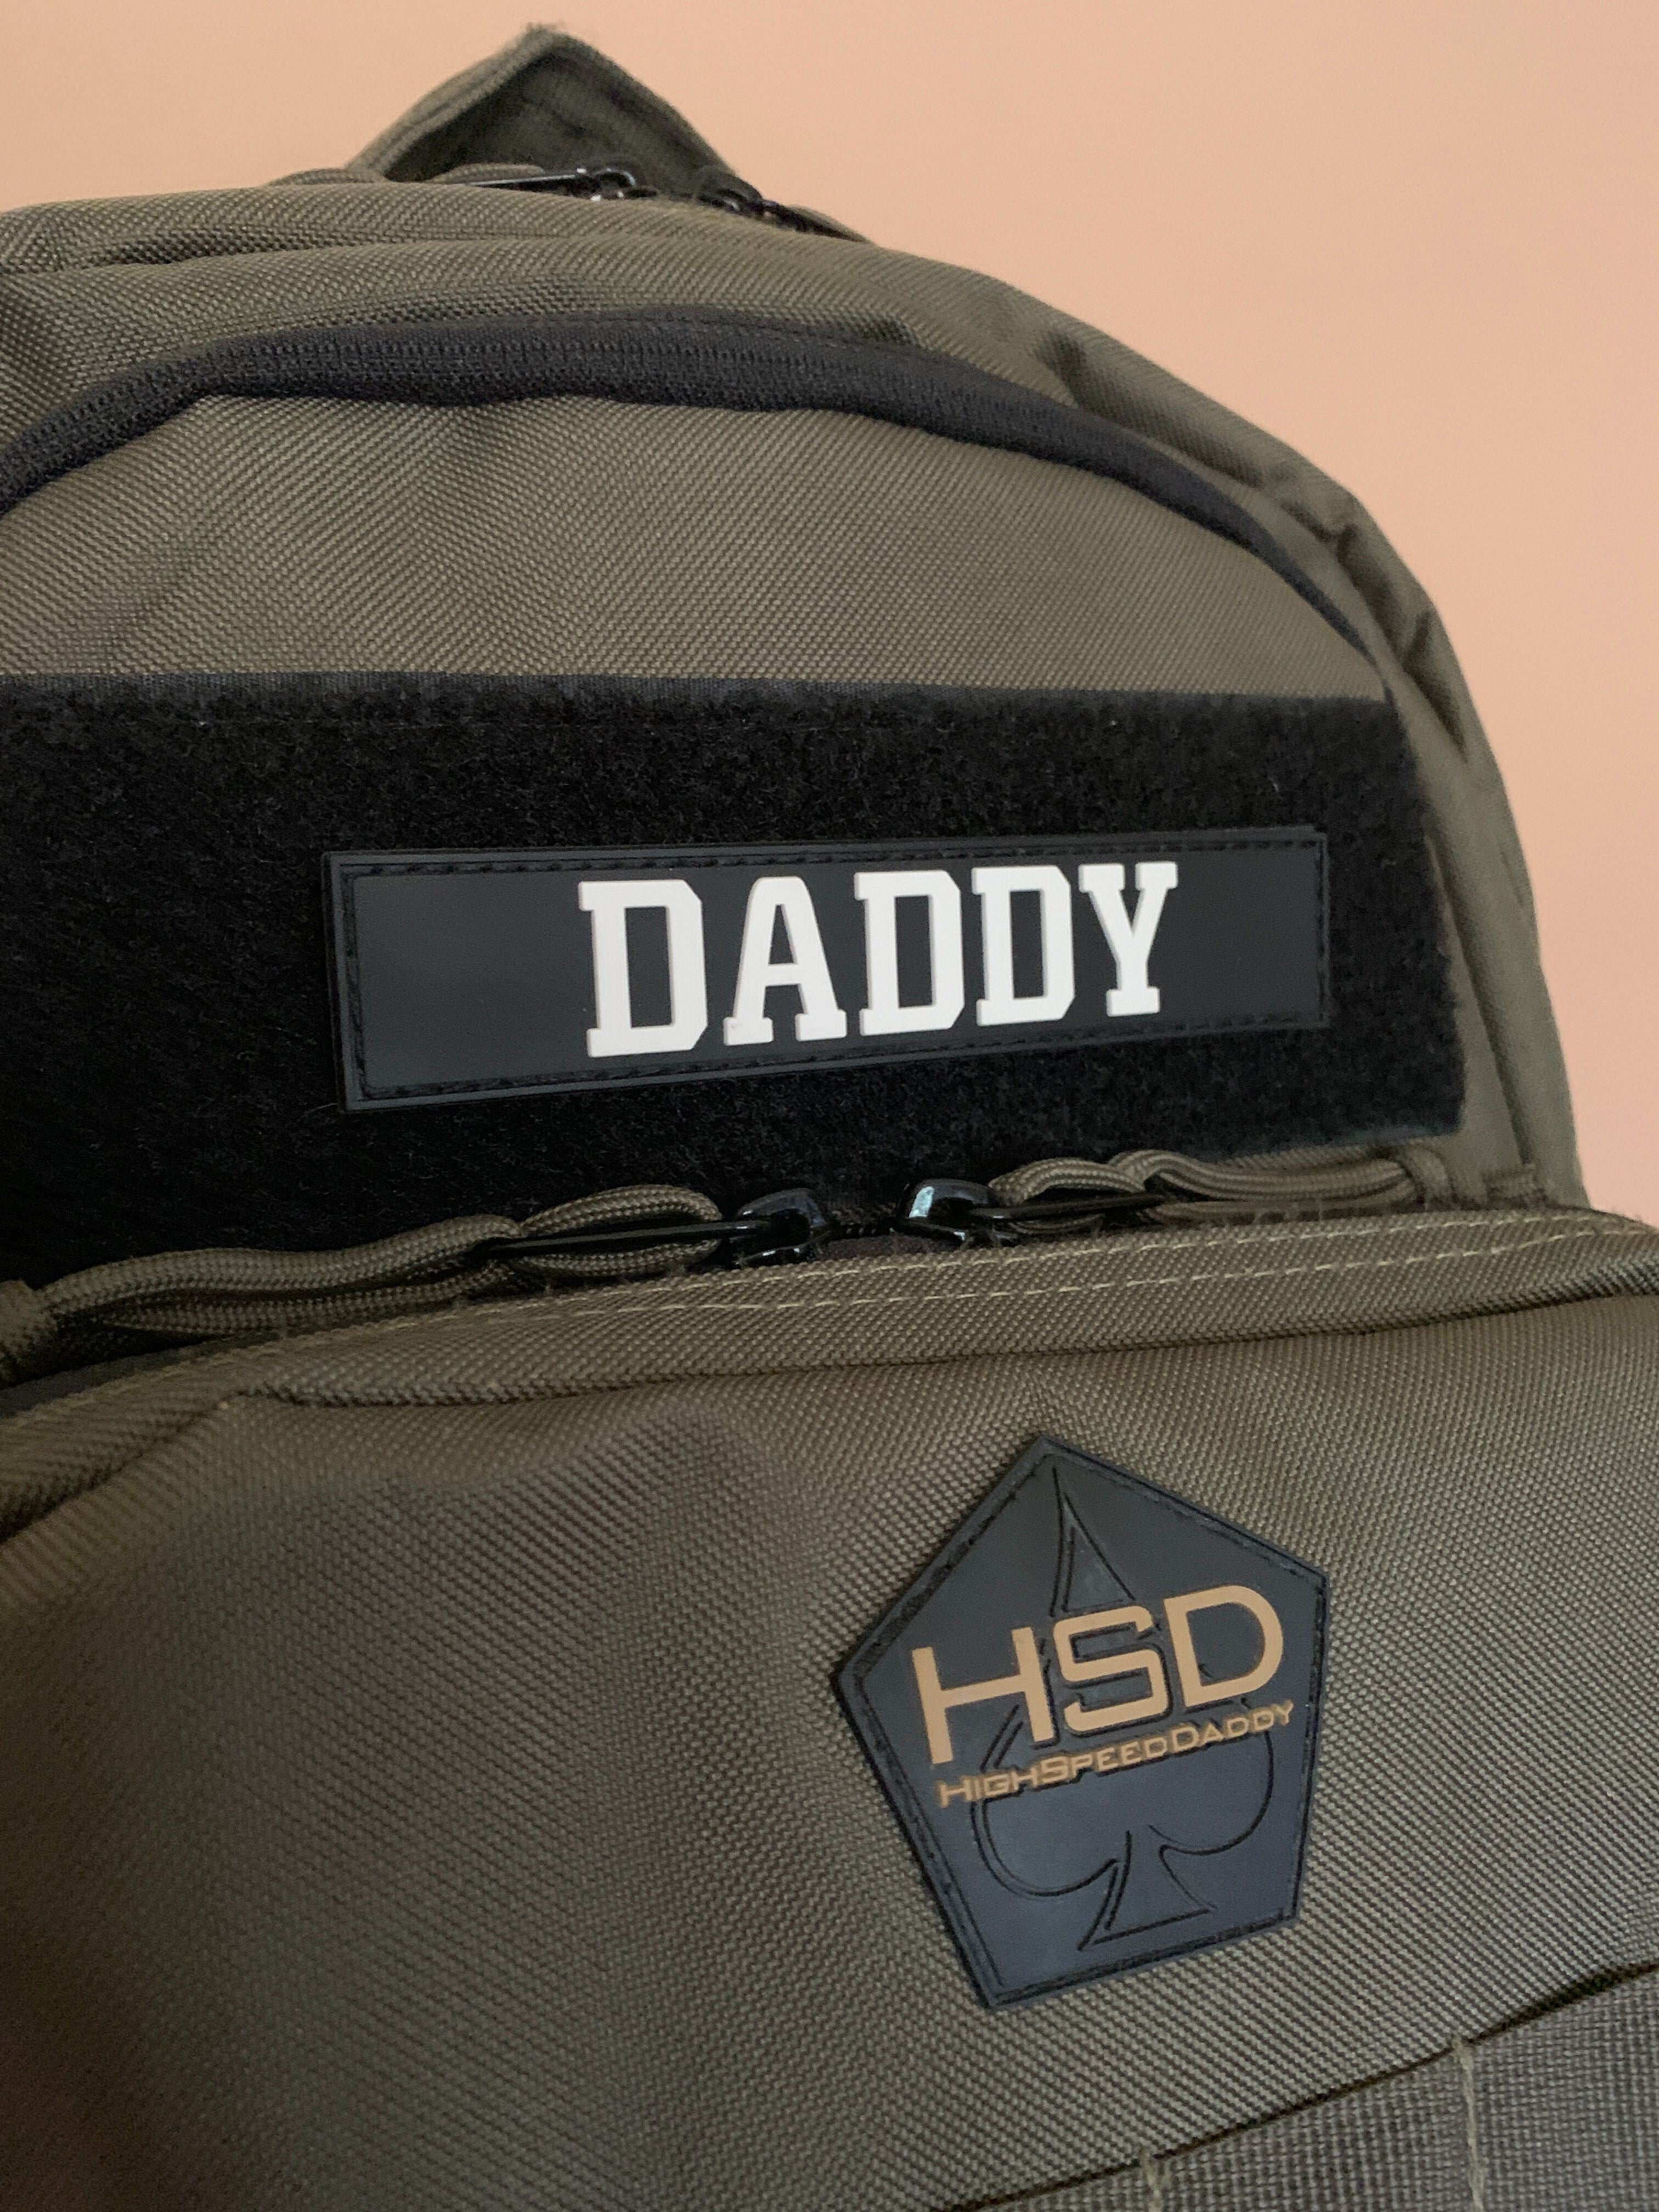 Daddy Patch - HighSpeedDaddy